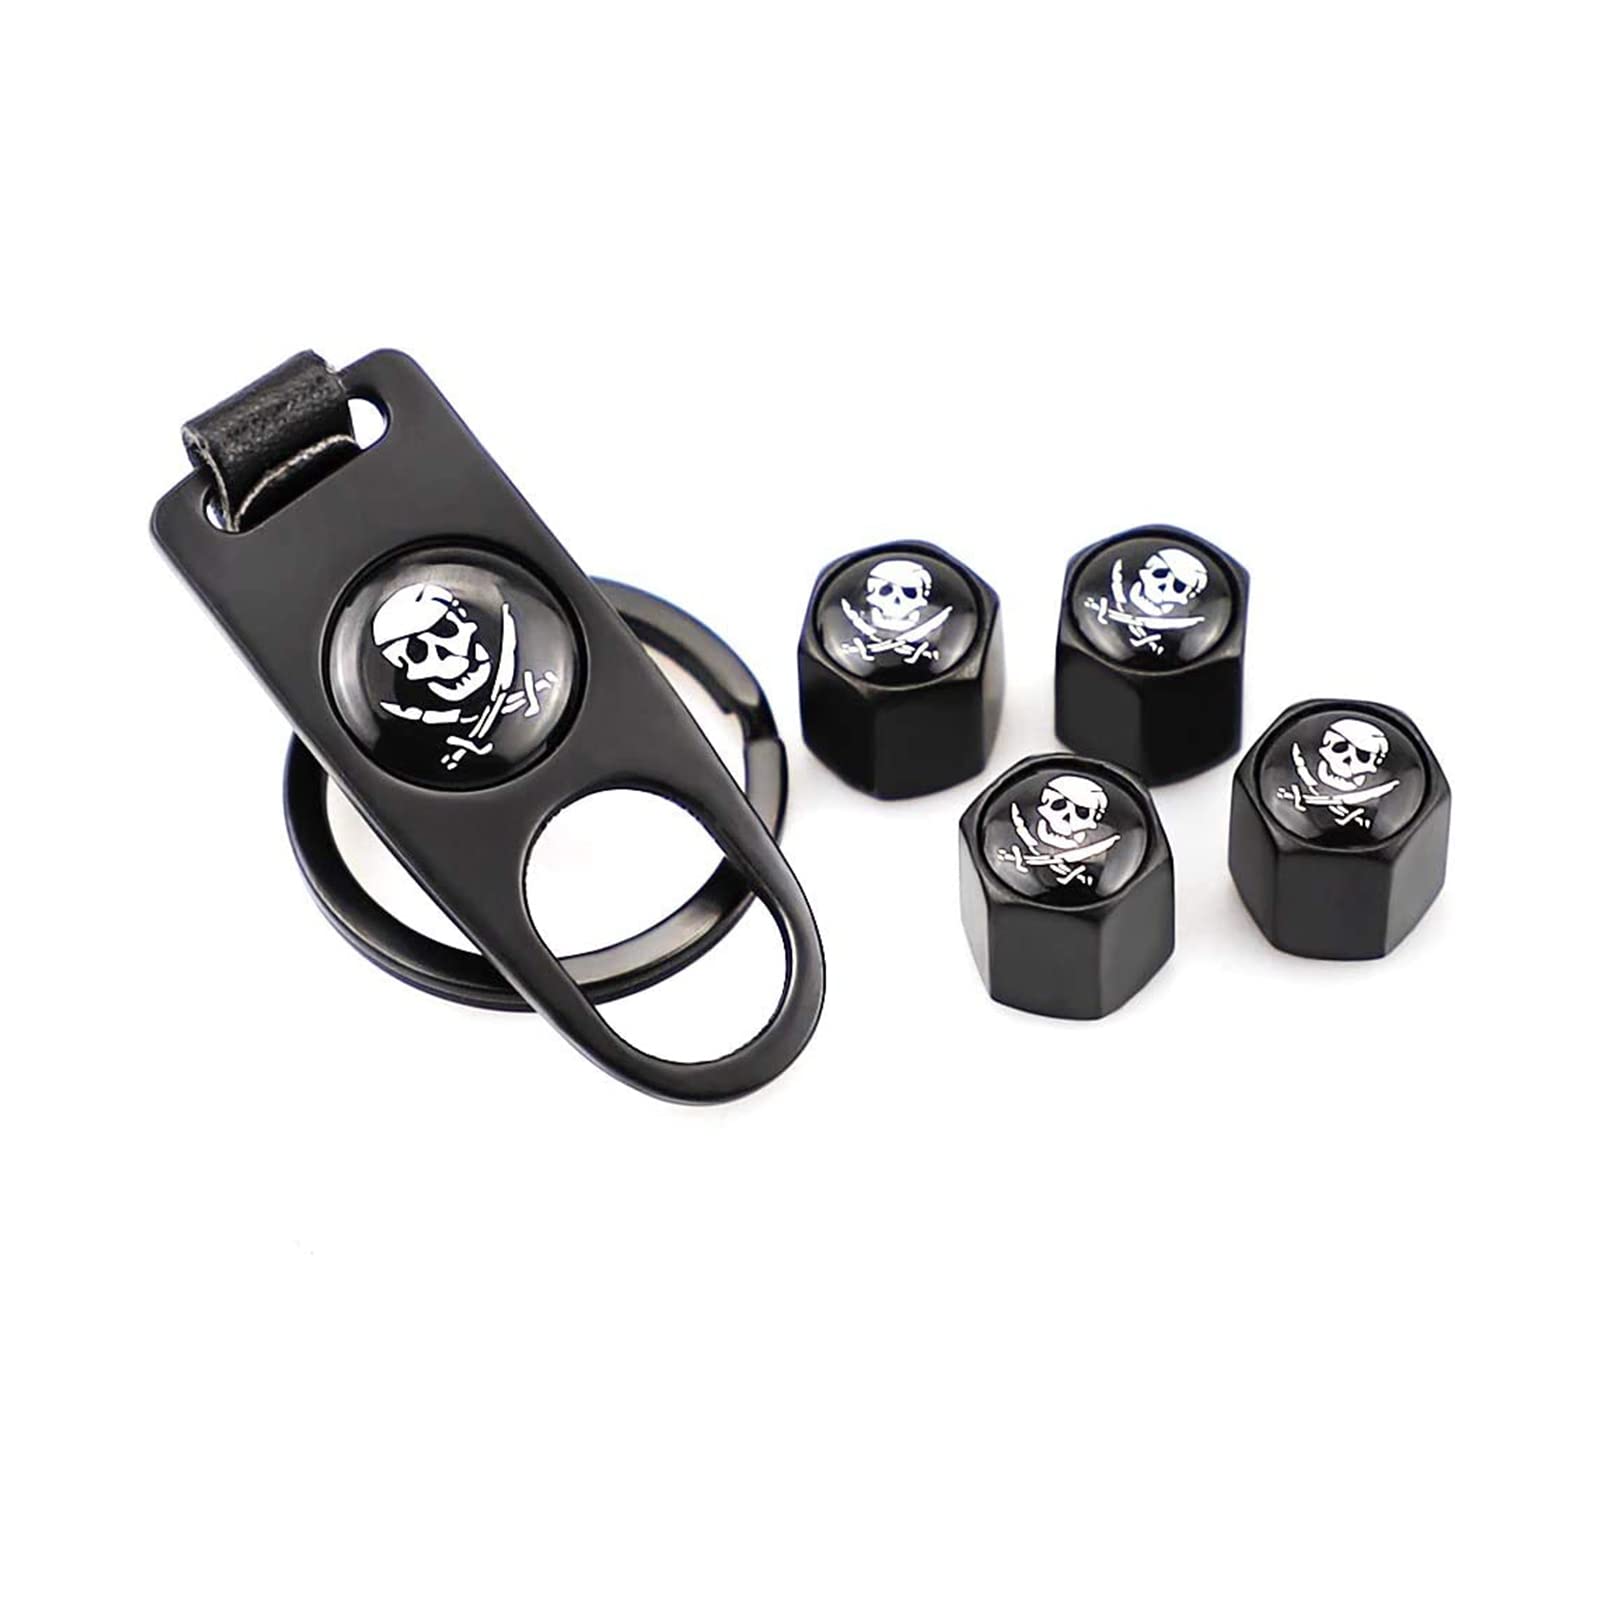 4 Stück Piraten-Ventilkappen mit Schraubenschlüssel, Schlüsselanhänger, universelle Reifenventil-Ventilkappen für Auto, Motorrad, Fahrrad von SGW